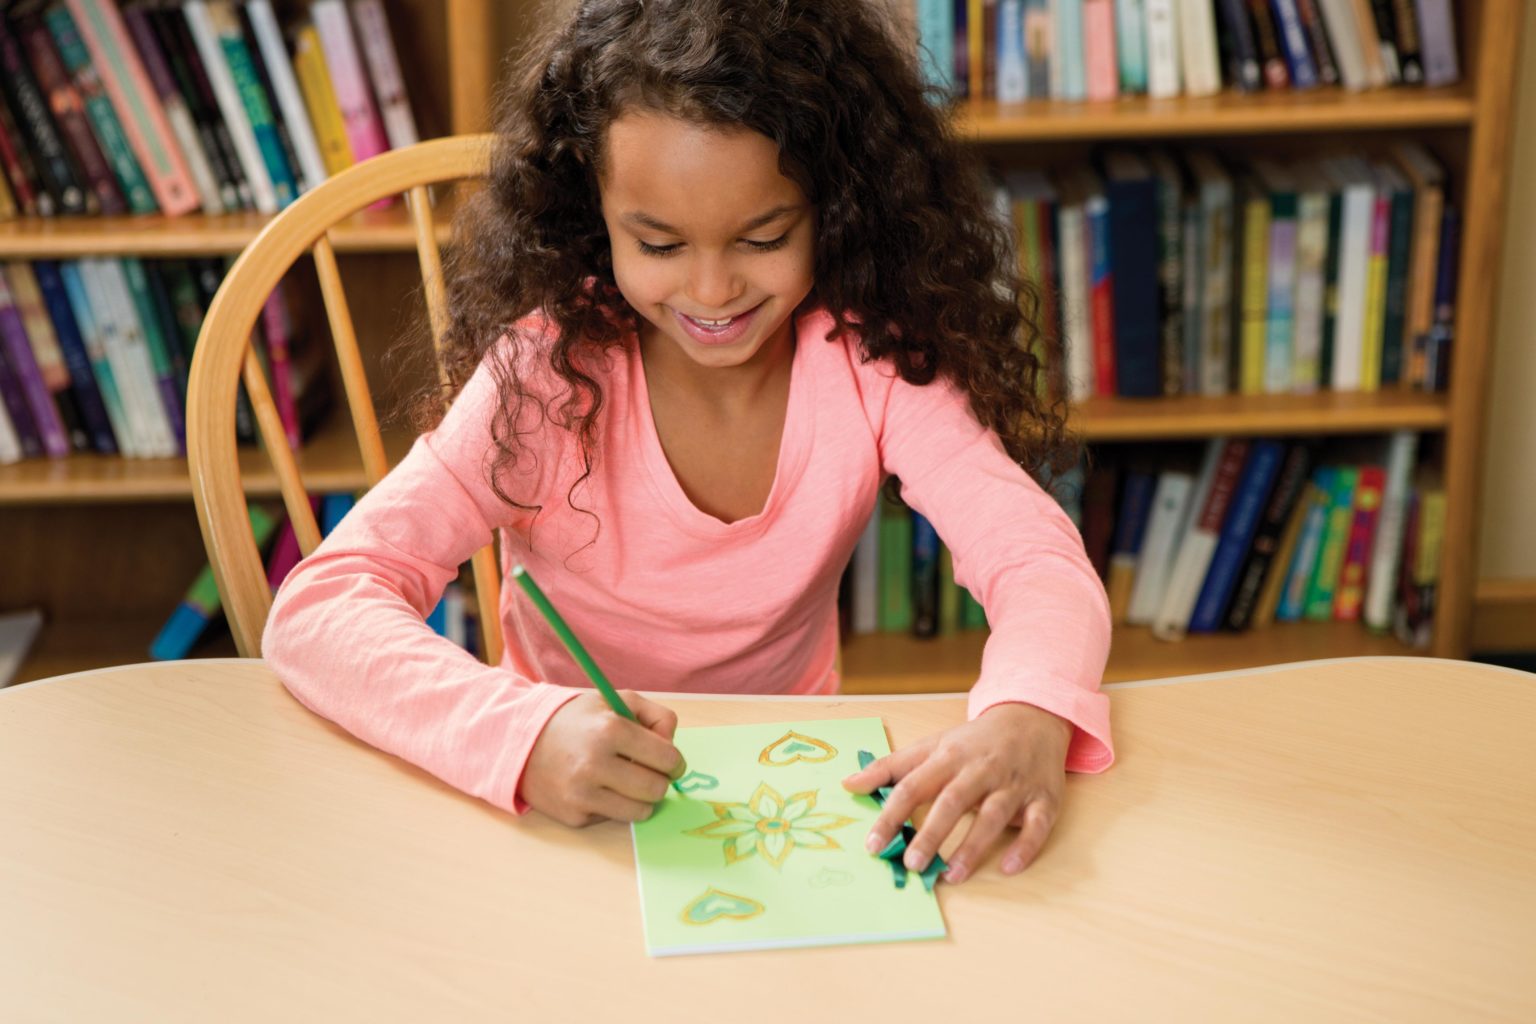 An elementary girl creates a card at a table.